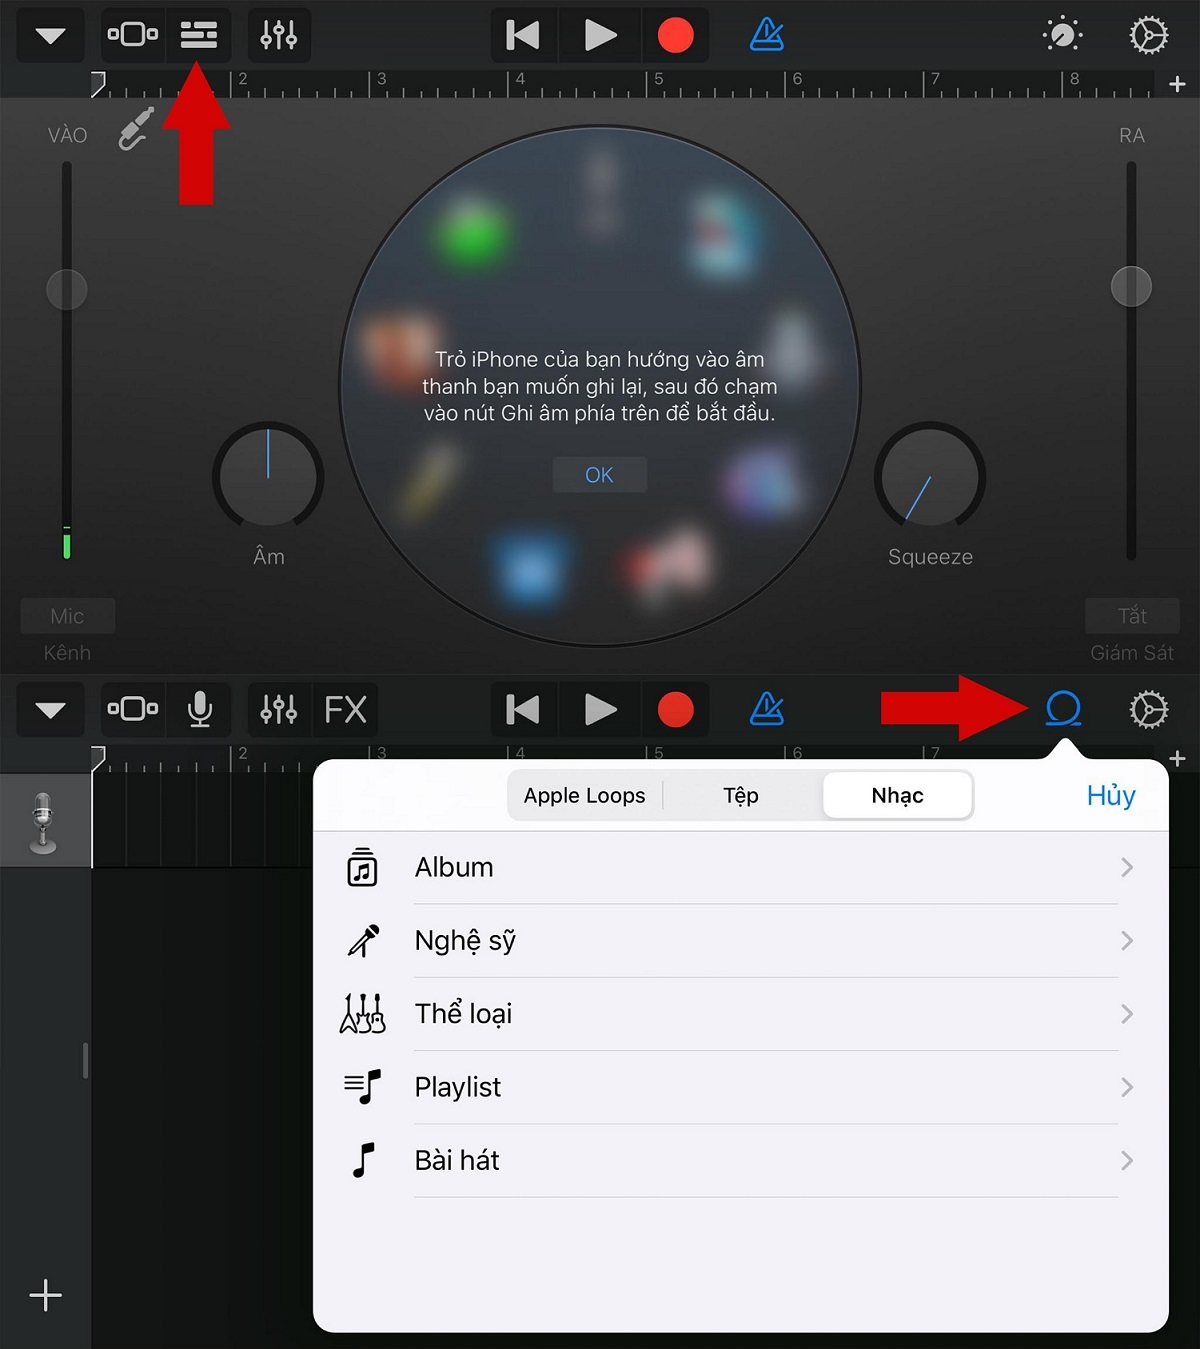 Cách cài nhạc chuông cho iPhone bằng Zing MP3 CỰC DỄ | Hướng dẫn kỹ thuật